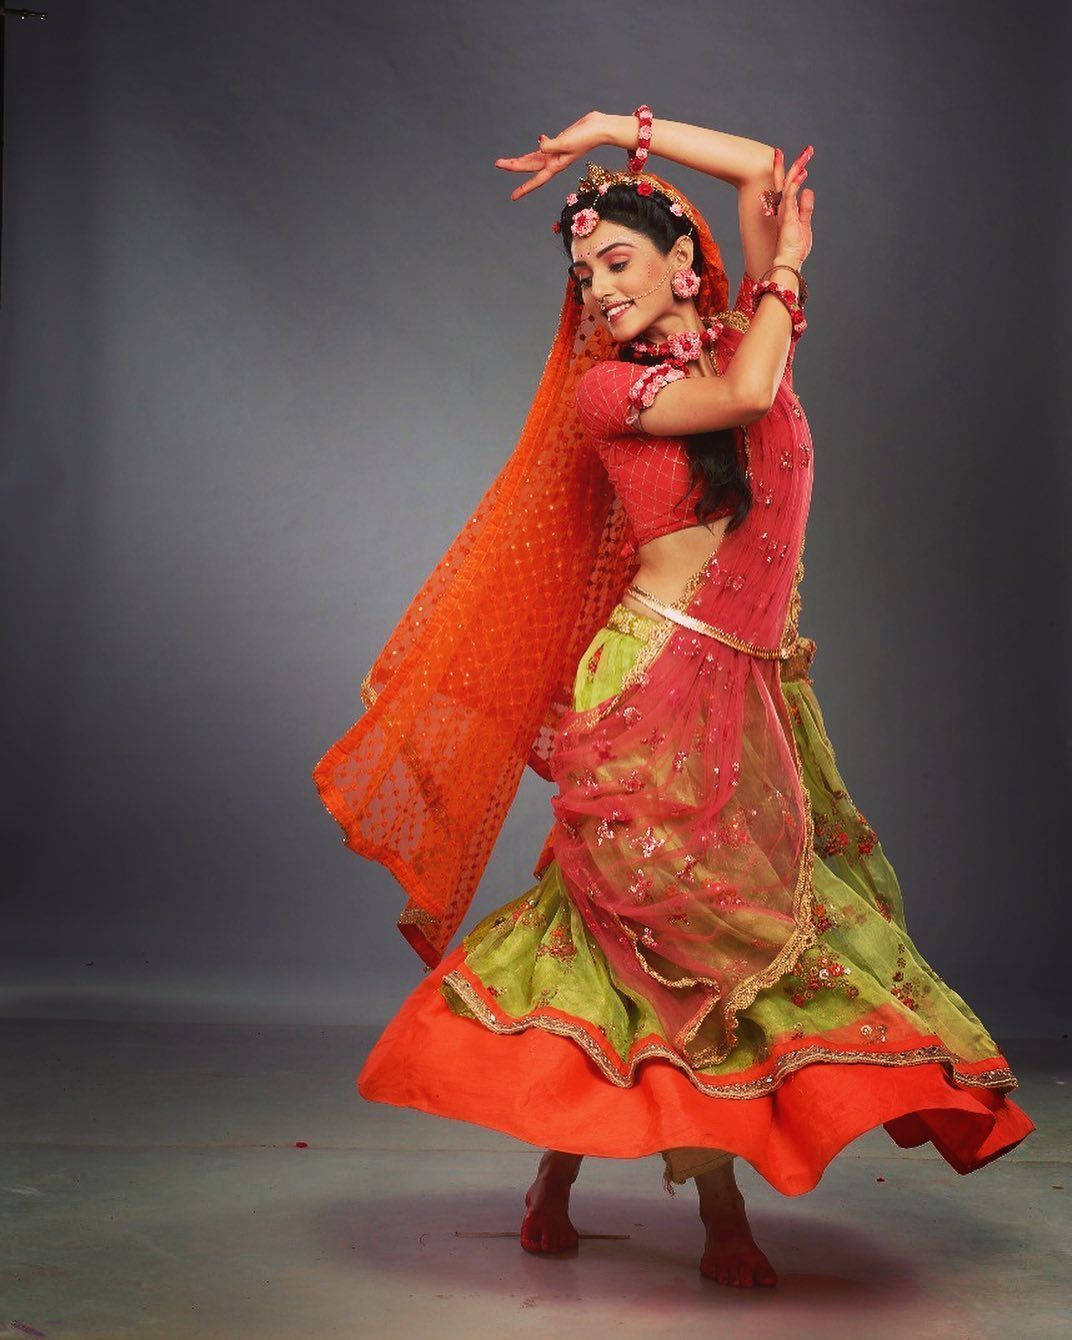 Mallika Singh Red Dress Dancing